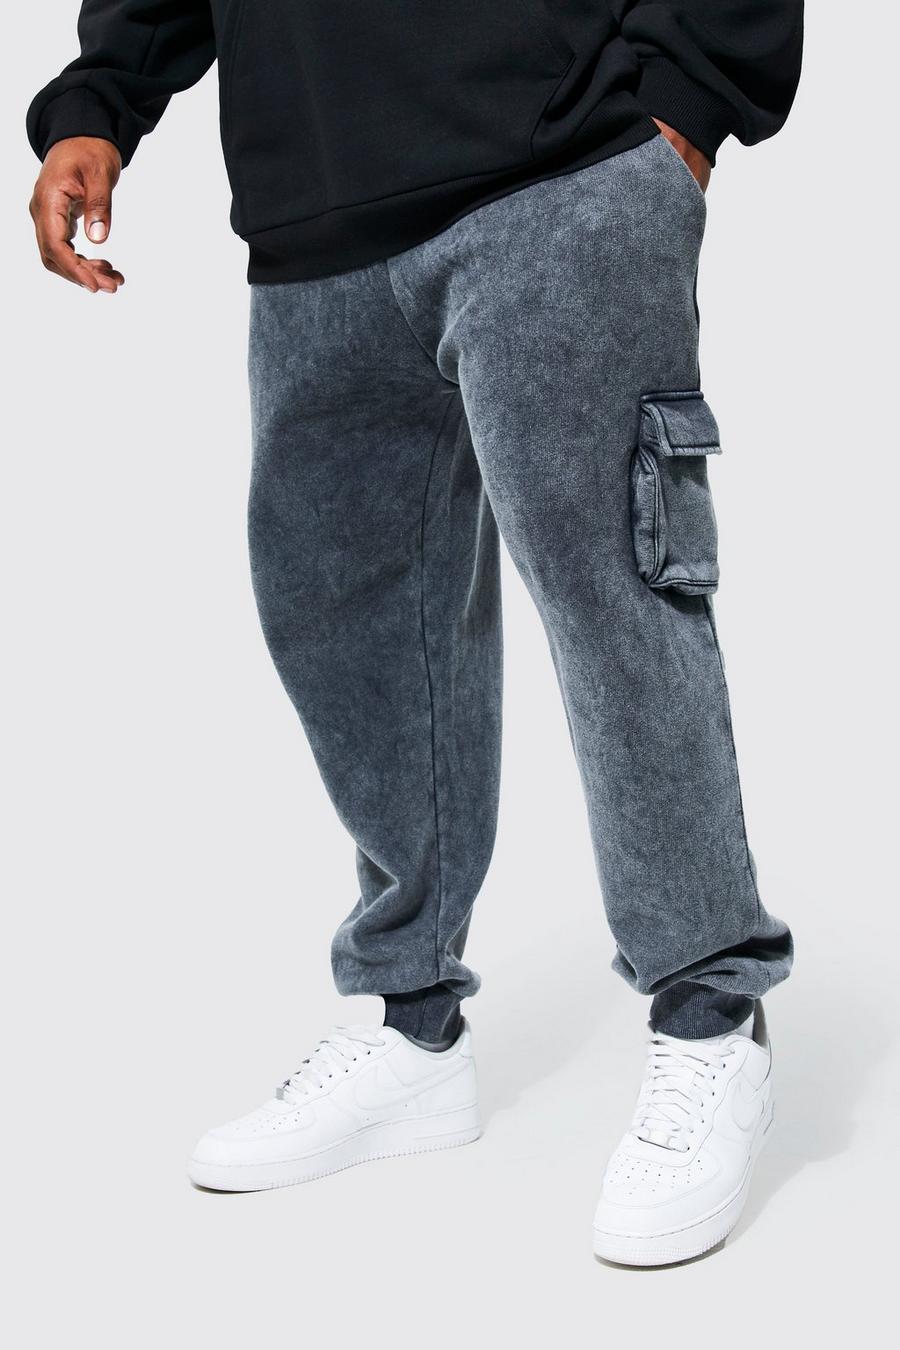 Pantaloni tuta Plus Size comodi in lavaggio acido stile Cargo, Charcoal grigio